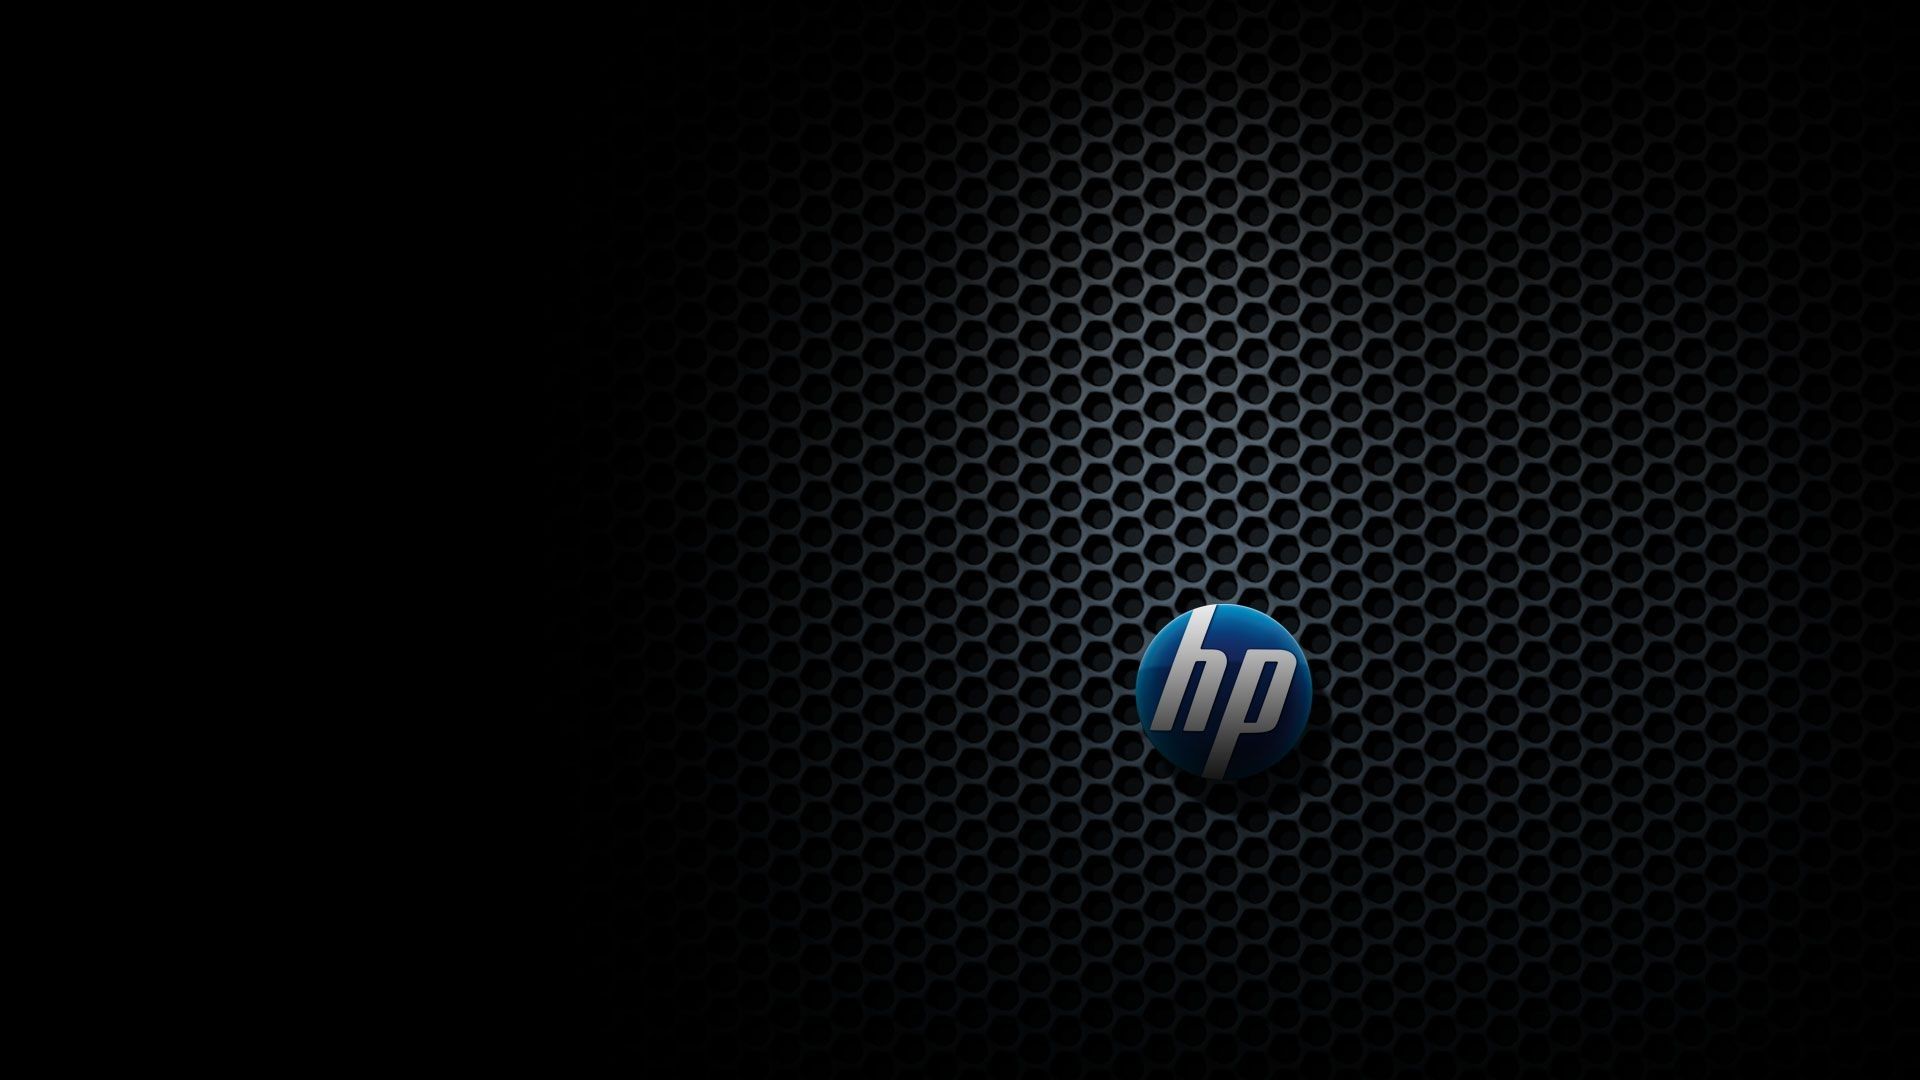 hp desktop backgrounds, hp desktop wallpapers